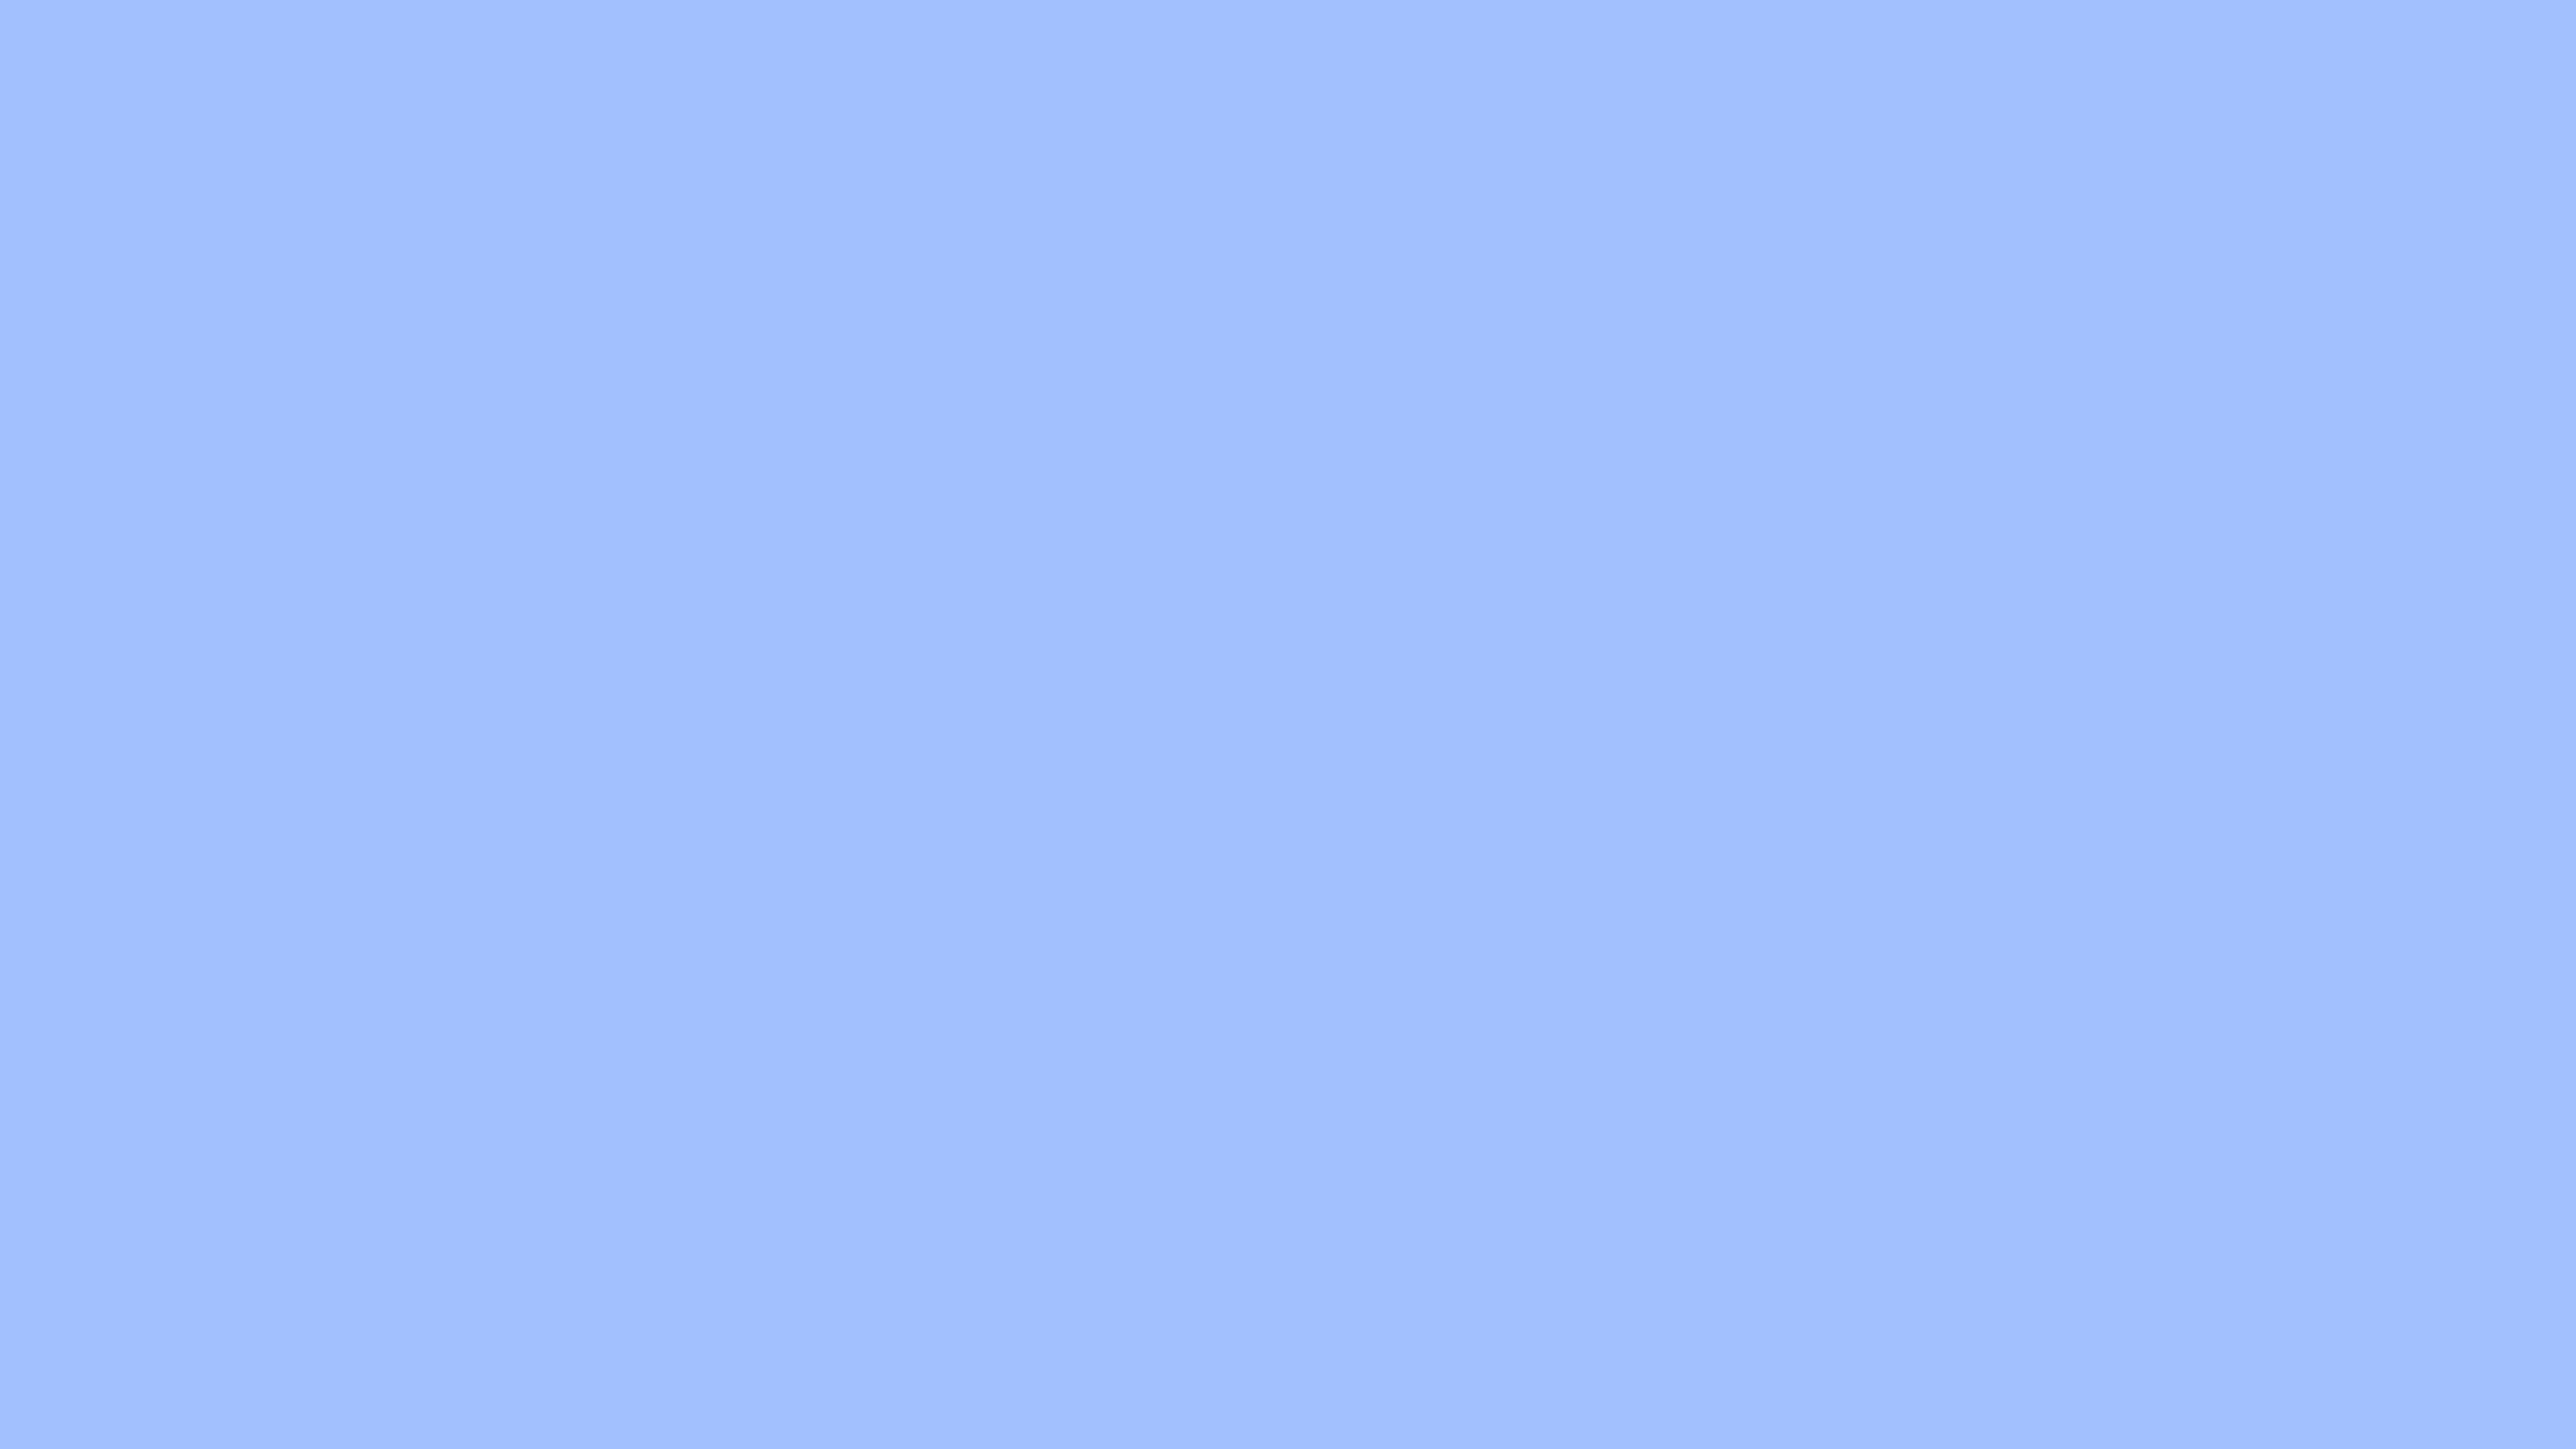 Pastel Blue Solid Color Background Image